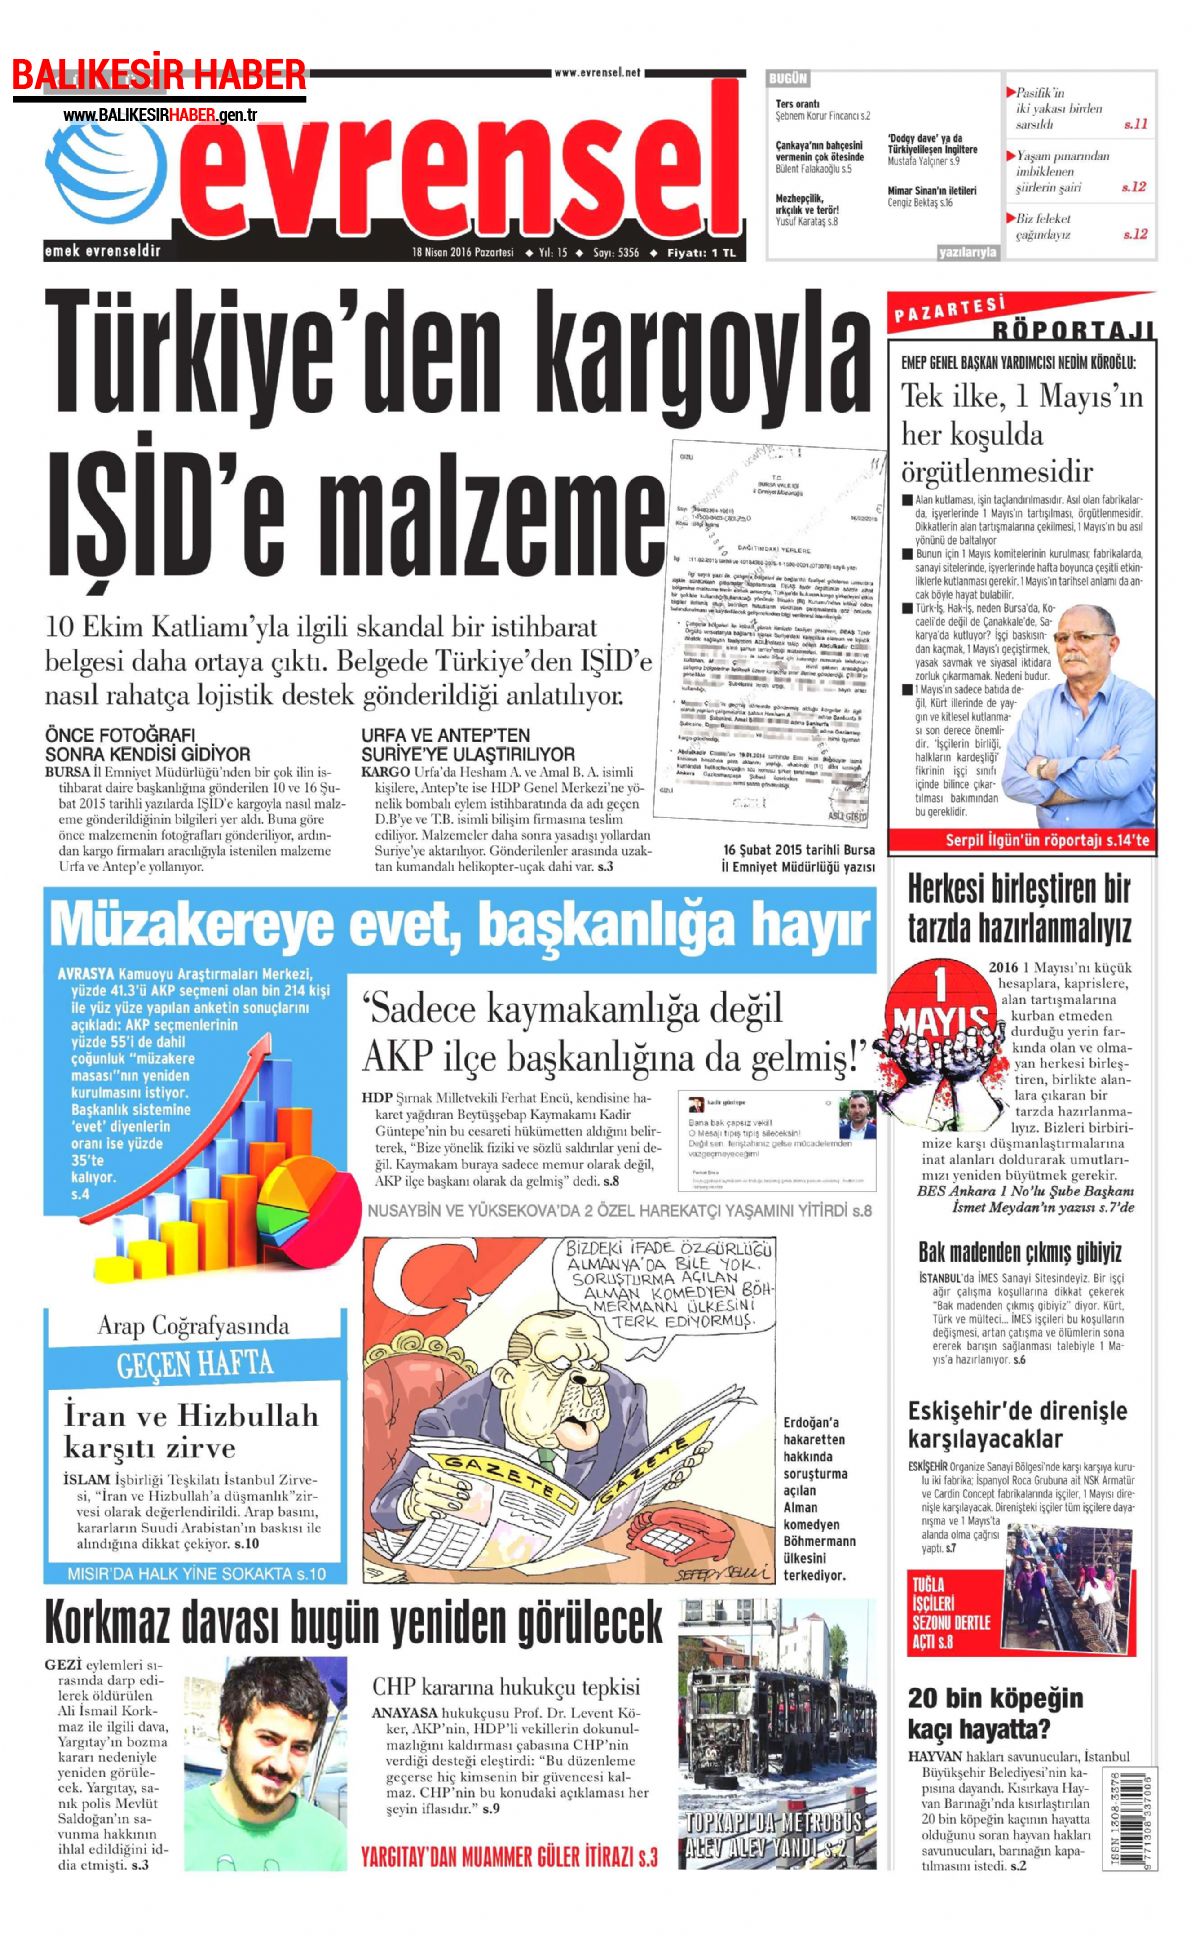 Evrensel Gazetesi 18 Nisan 2016 Gazete Manşetleri